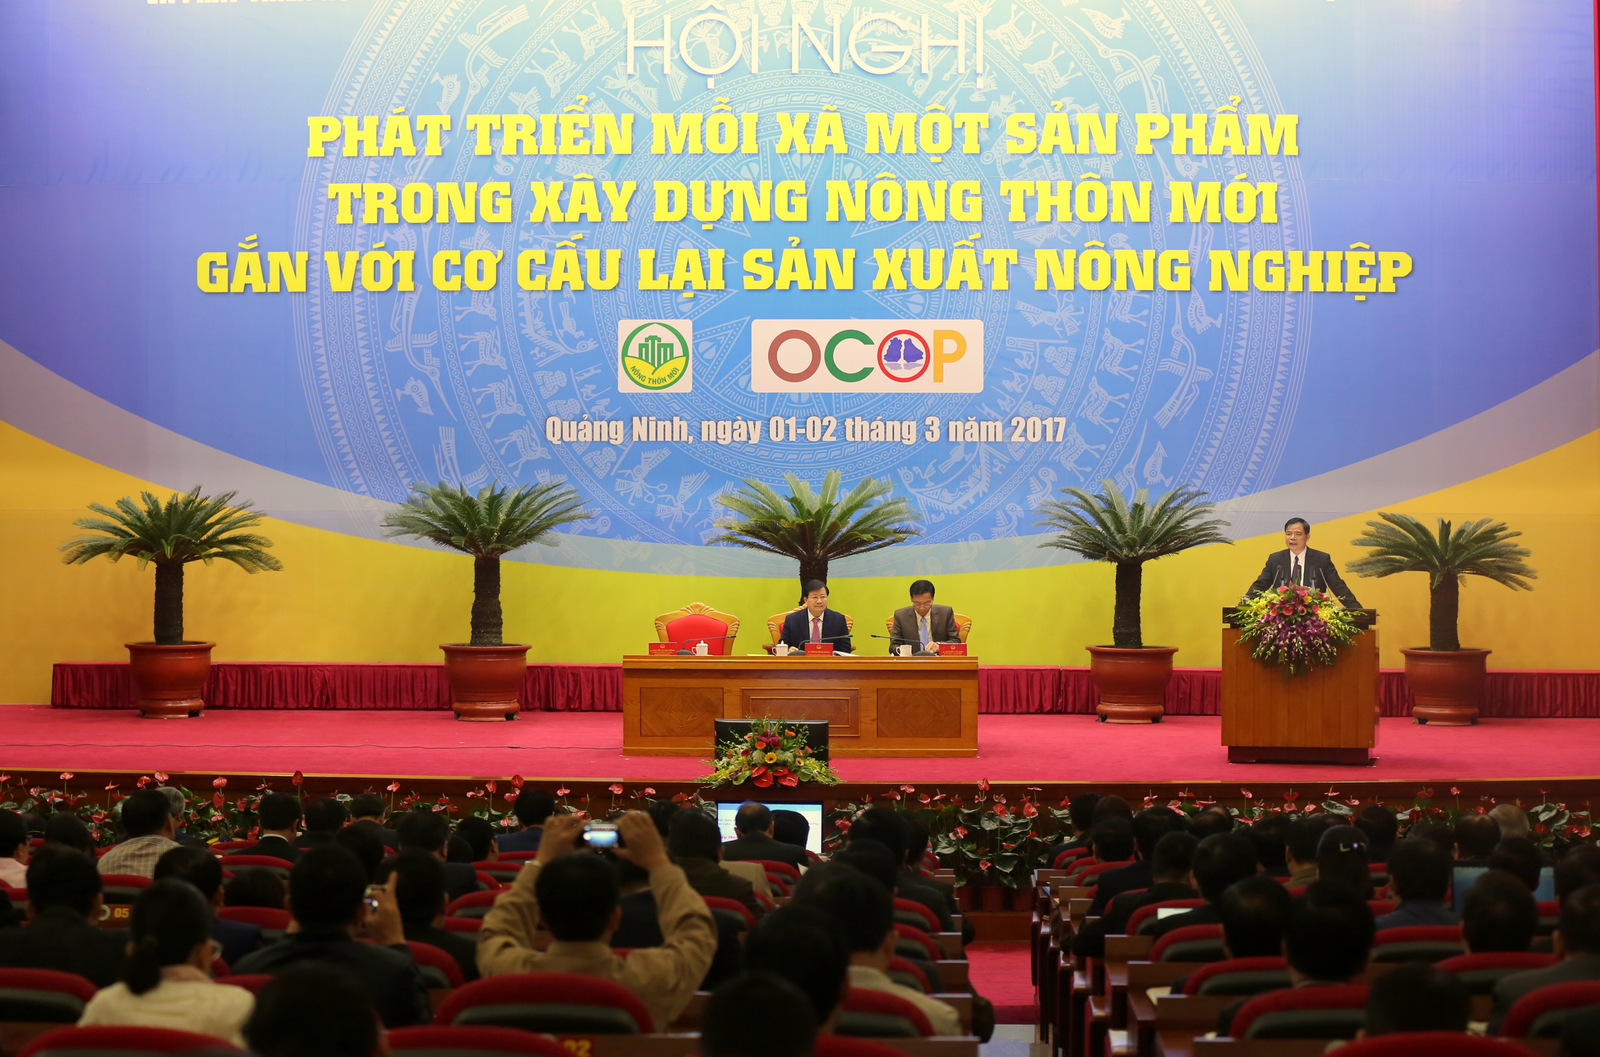  Bộ trưởng Bộ NN&PTNT Nguyễn Xuân Cường phát biểu khai mạc hội nghị. Ảnh: VGP